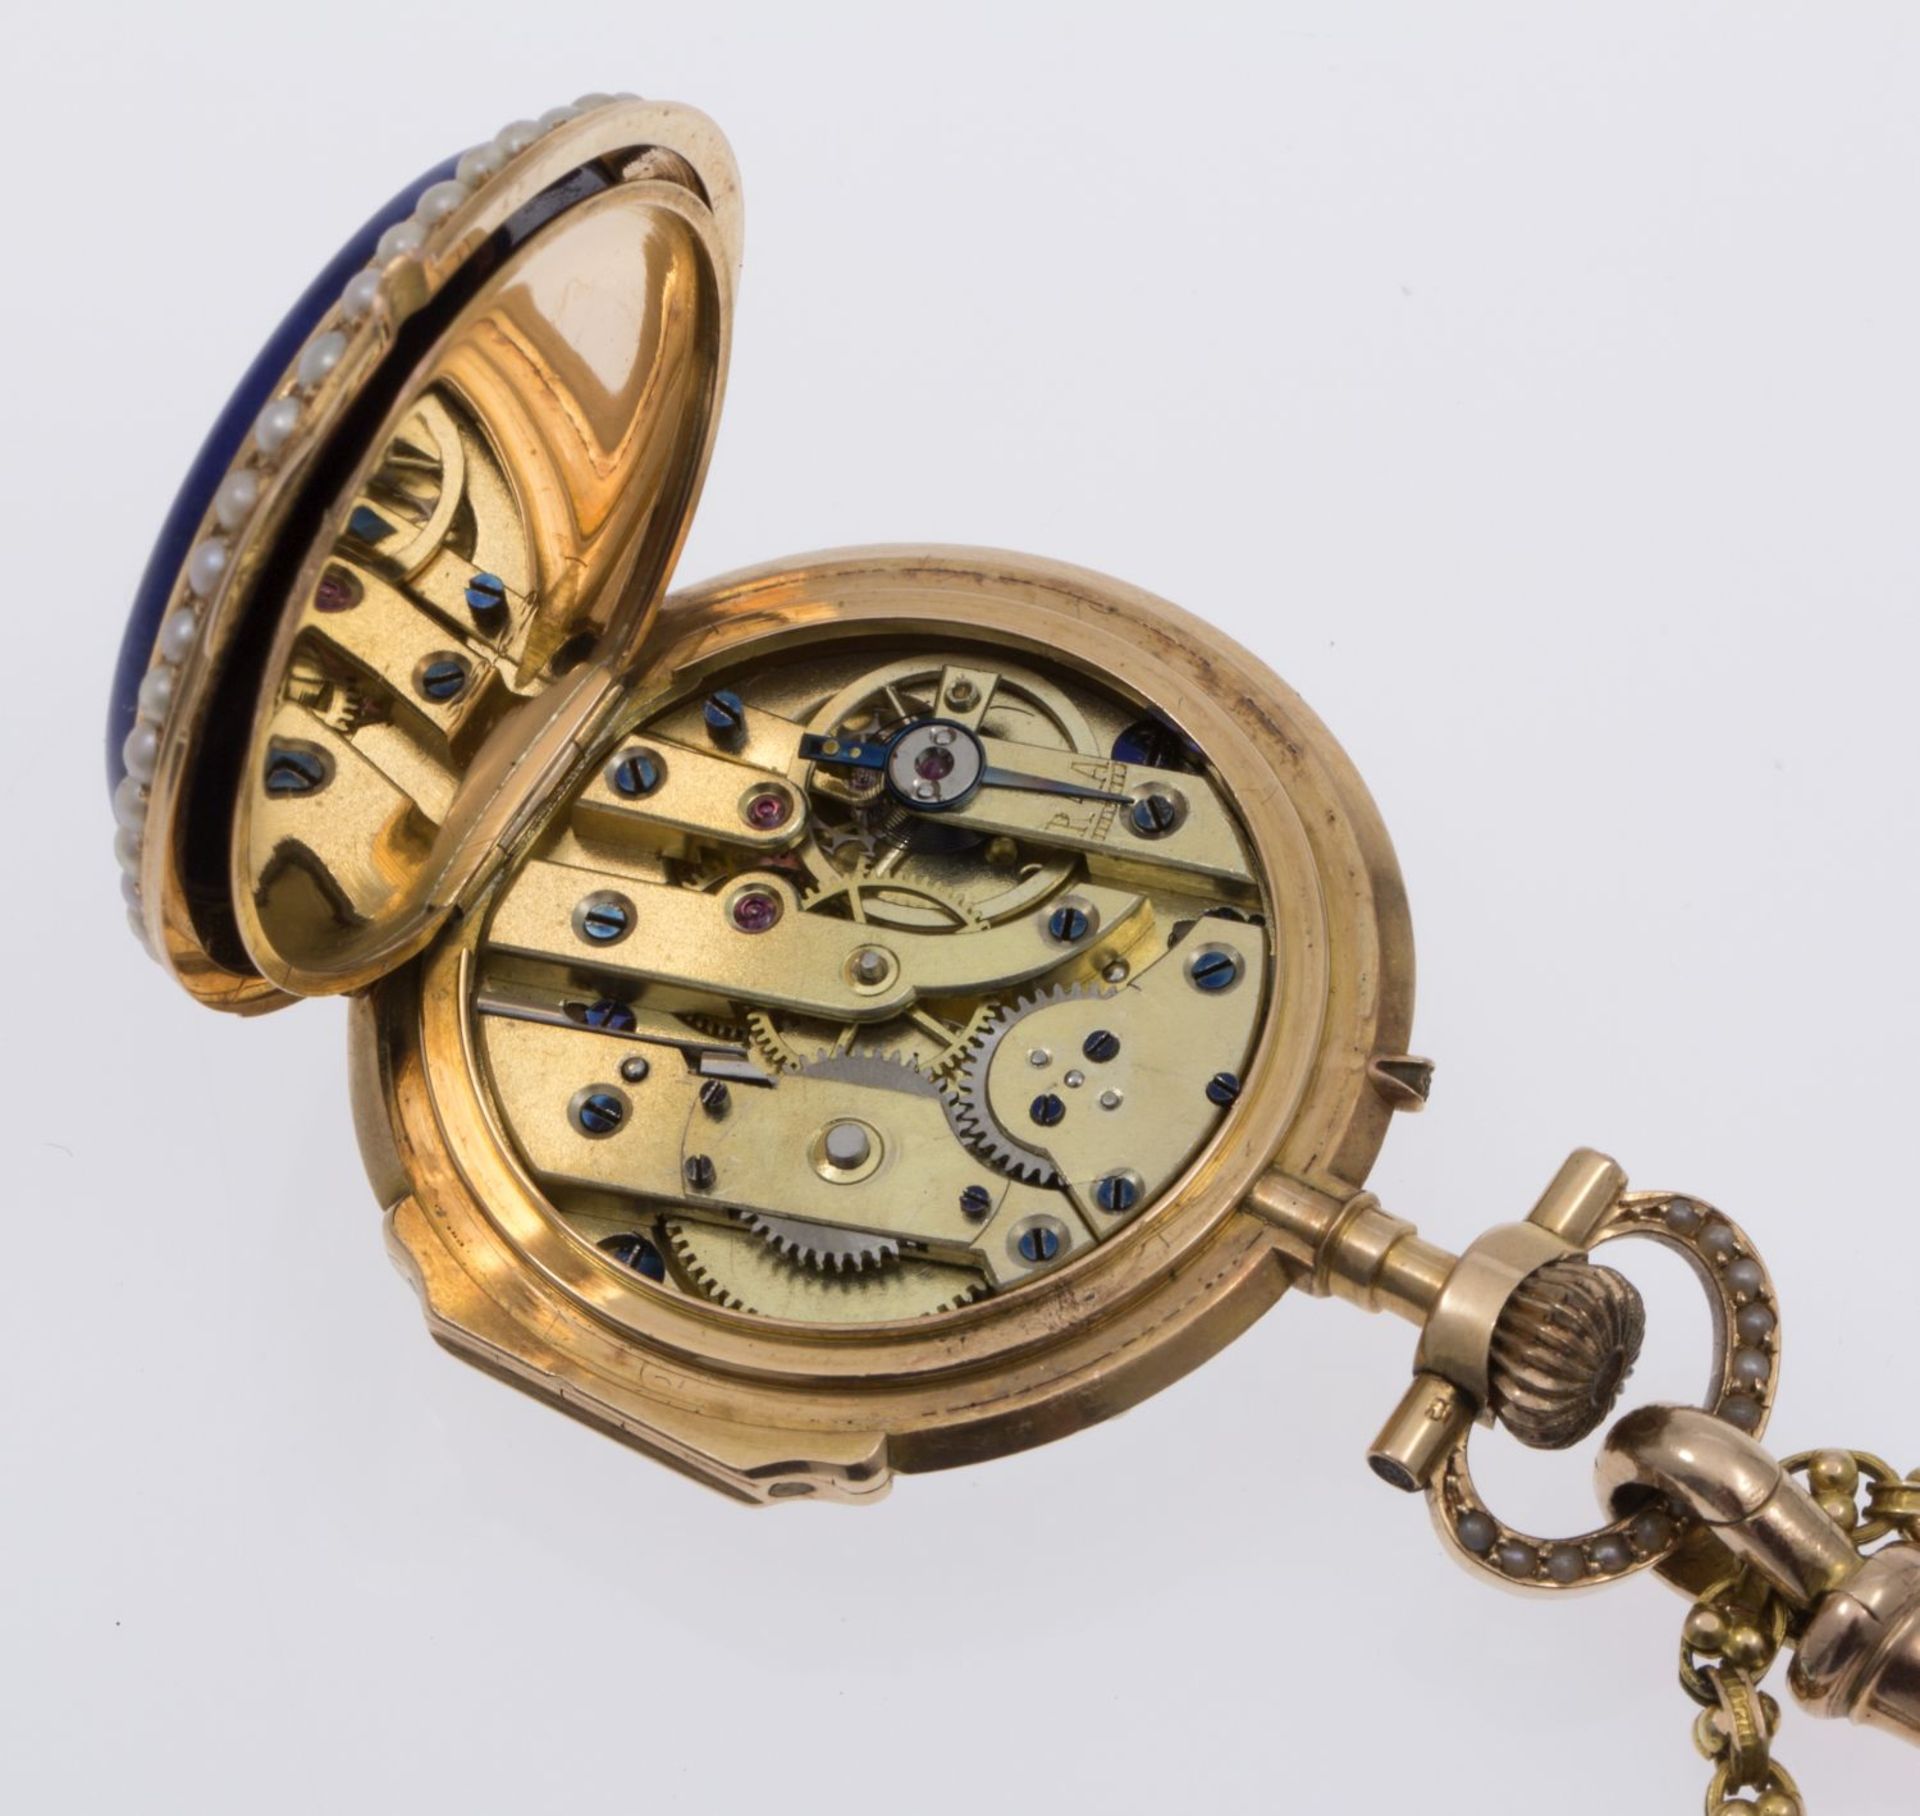 Dekorative Damentaschenuhr an Uhrenkette - Image 3 of 4